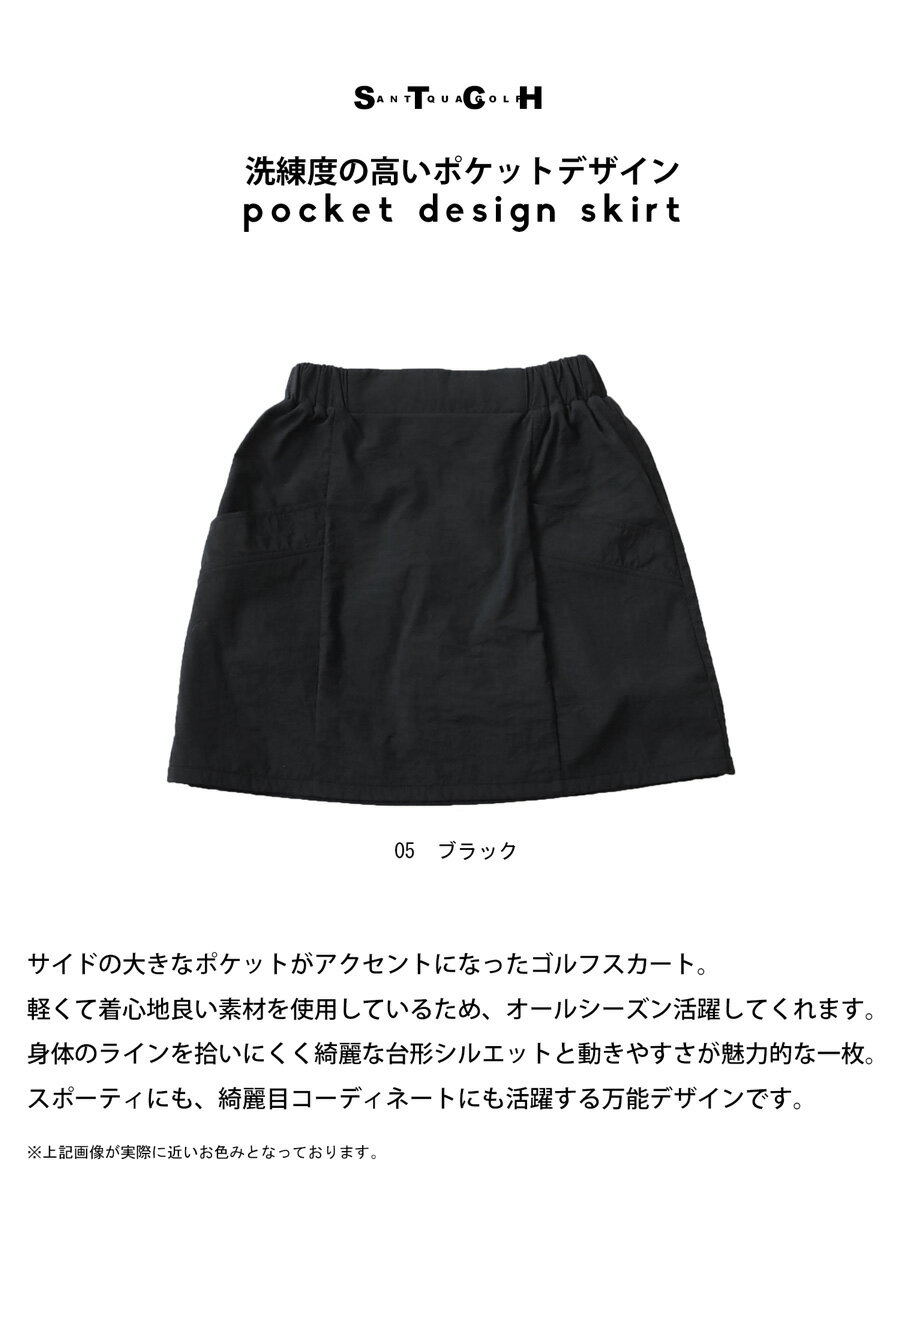 ANTIQUA GOLF×STCH ポケットデザインスカート レディース 送料無料・再販。(100)メール便可 母の日